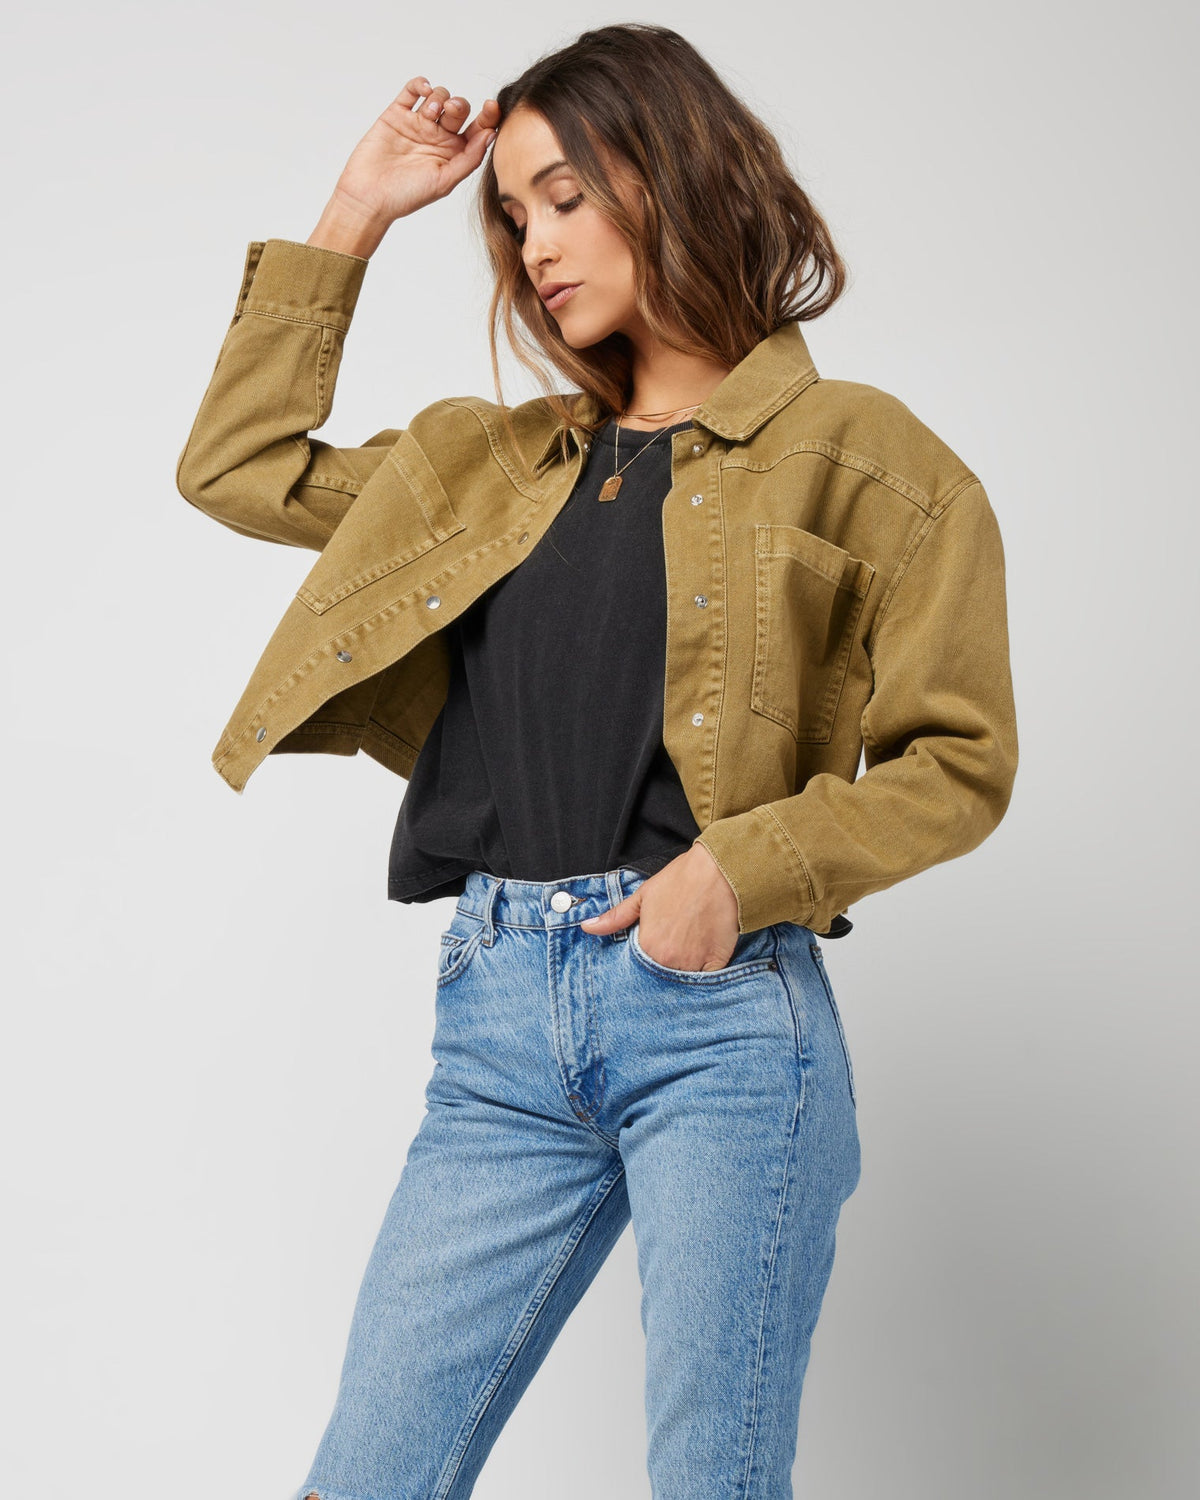 Harris Jacket Fern | Model: Anna (size: S)